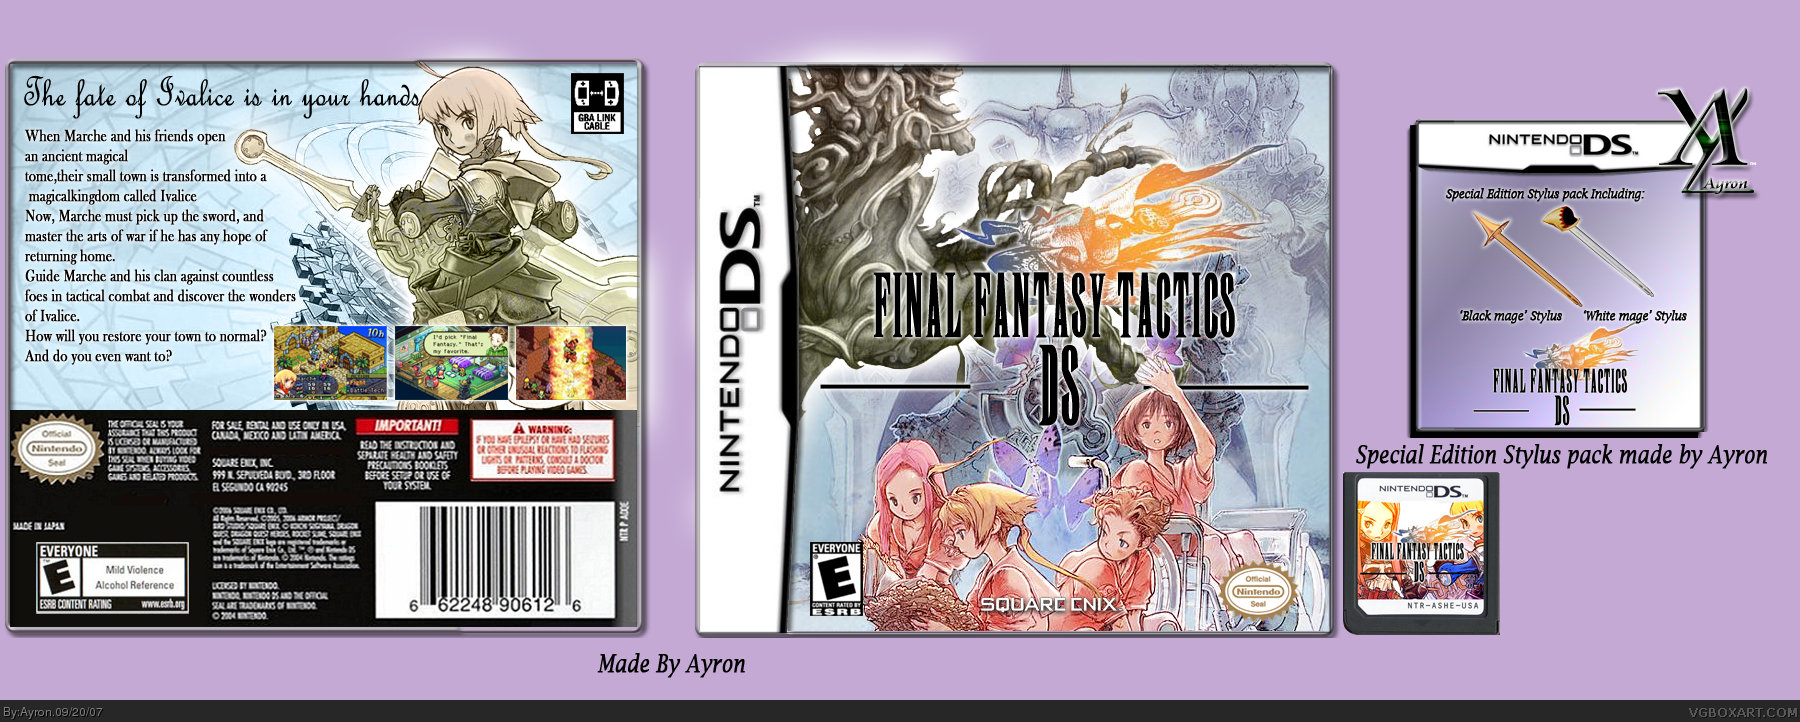 Final Fantasy Tactics DS box cover